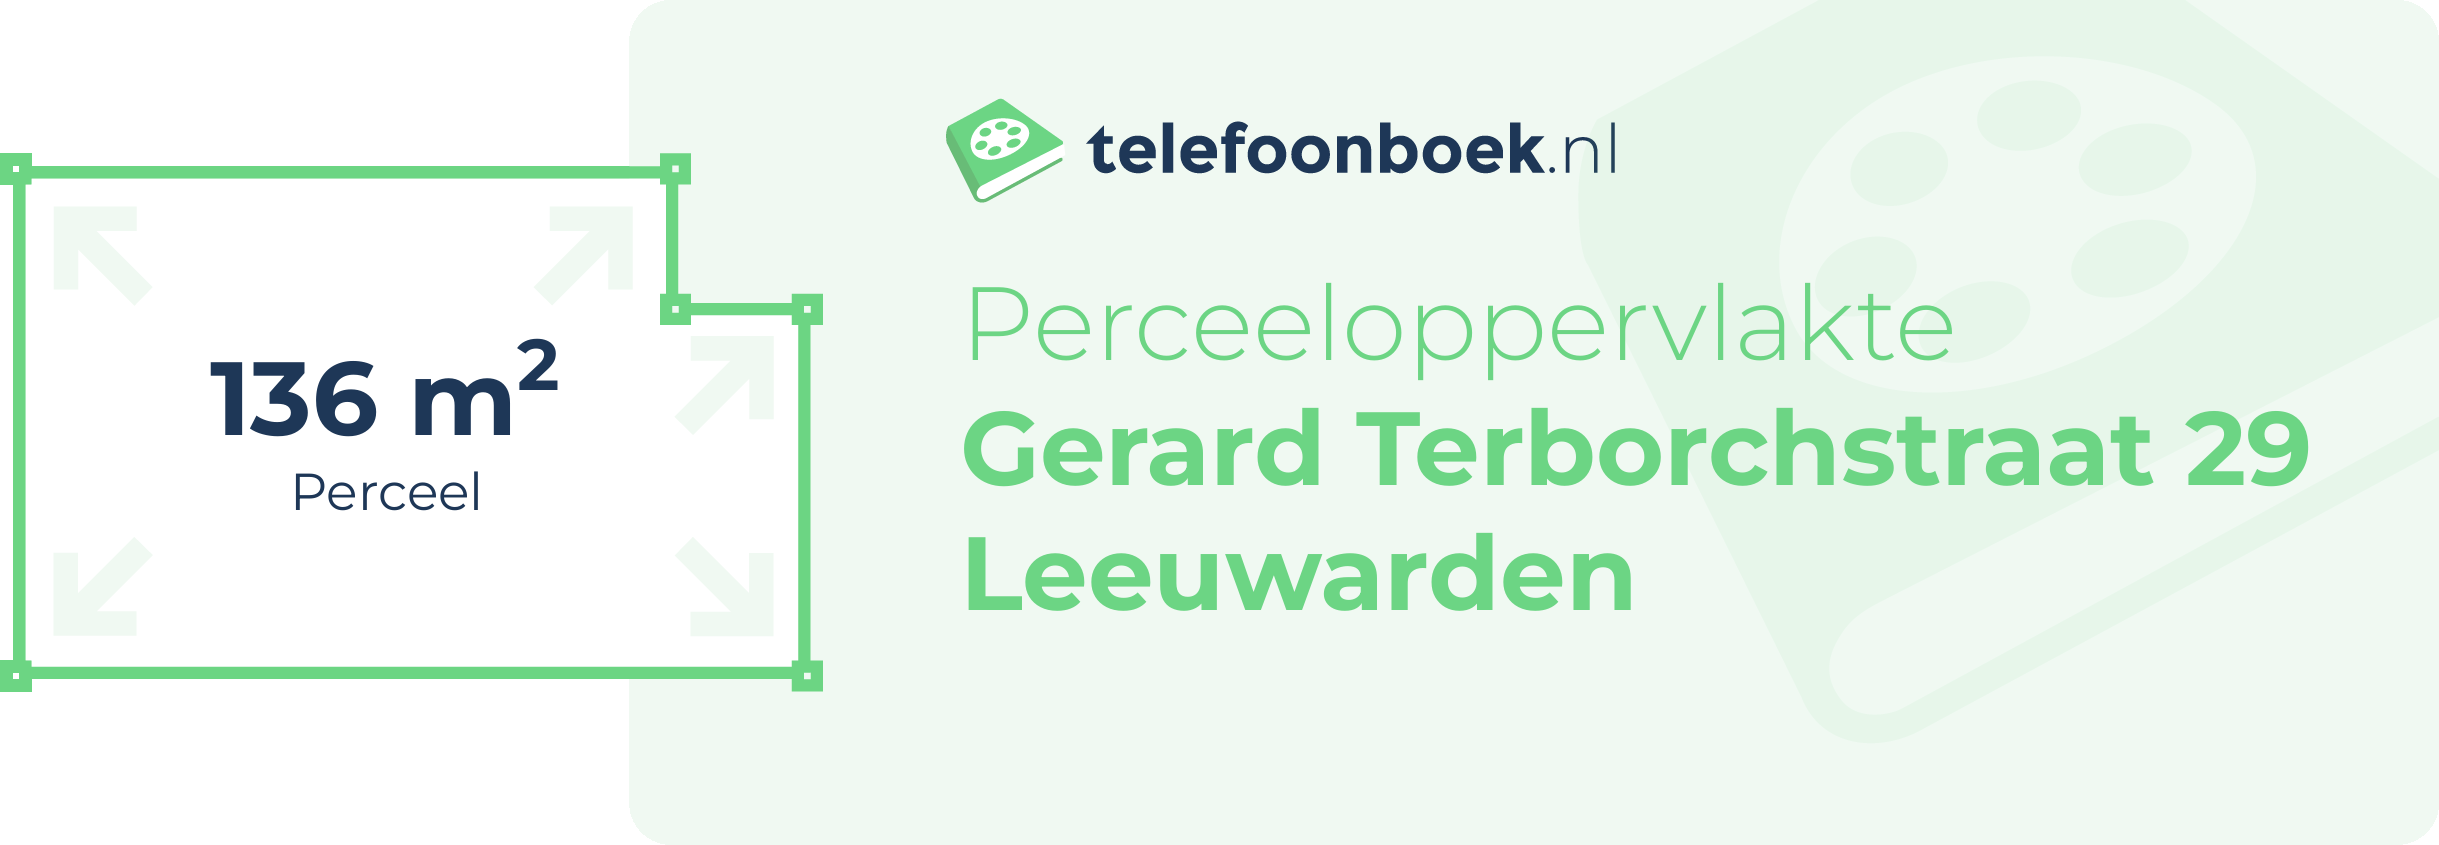 Perceeloppervlakte Gerard Terborchstraat 29 Leeuwarden